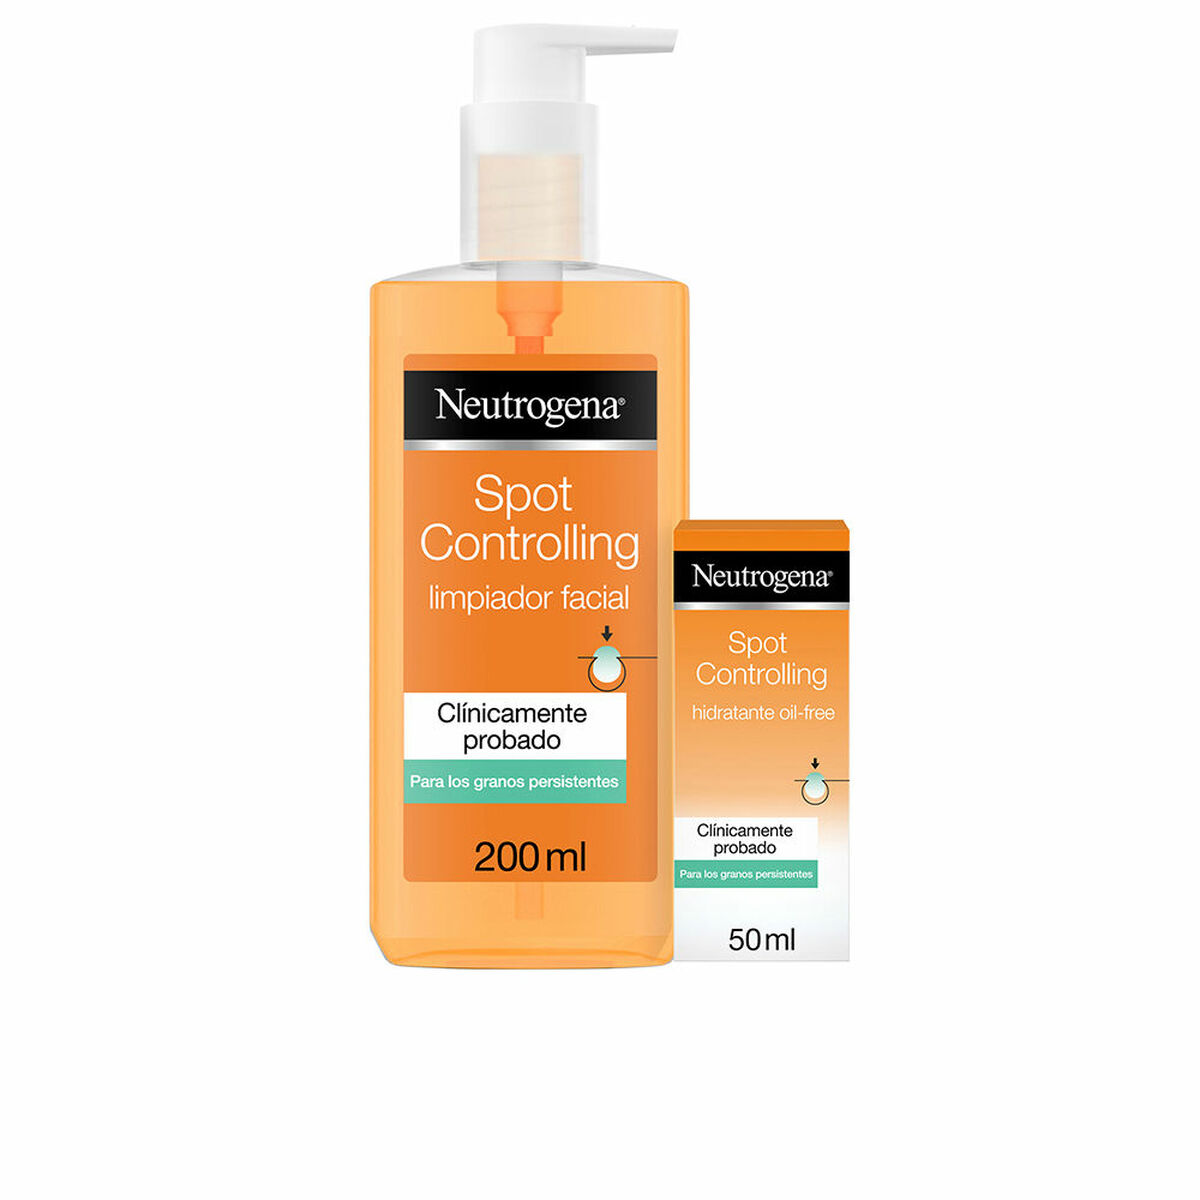 Unisex-Kosmetik-Set von Neutrogena with tiefenwirksame Hautpflege und effektive Bekämpfung von Hautproblemen für ein strahlendes Hautbild.